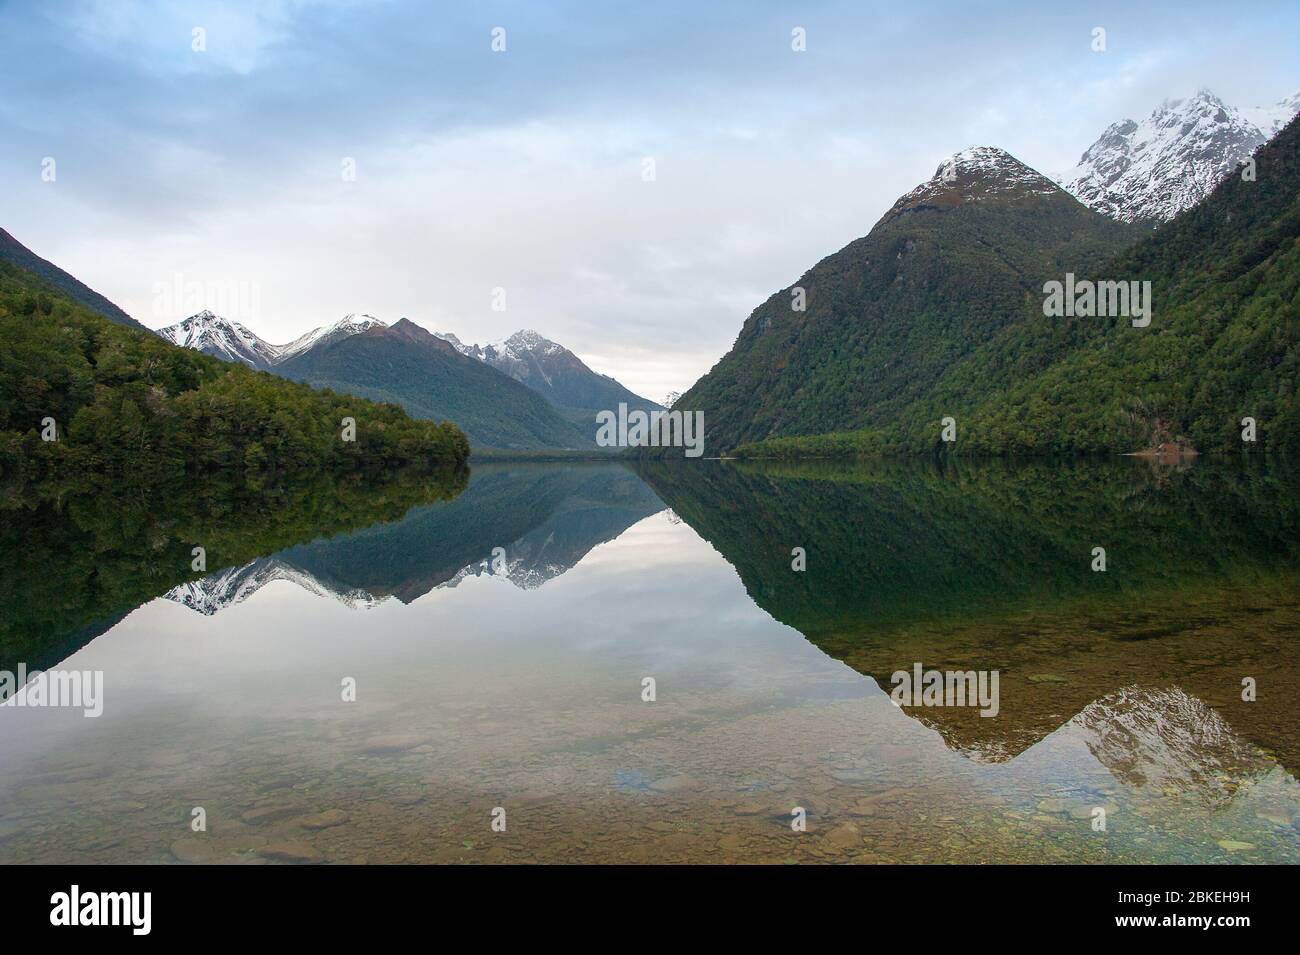 Lac Gunn, Fiordland, Nouvelle-Zélande. Paysage pittoresque, montagnes enneigées reflétées dans un lac clair. Banque D'Images